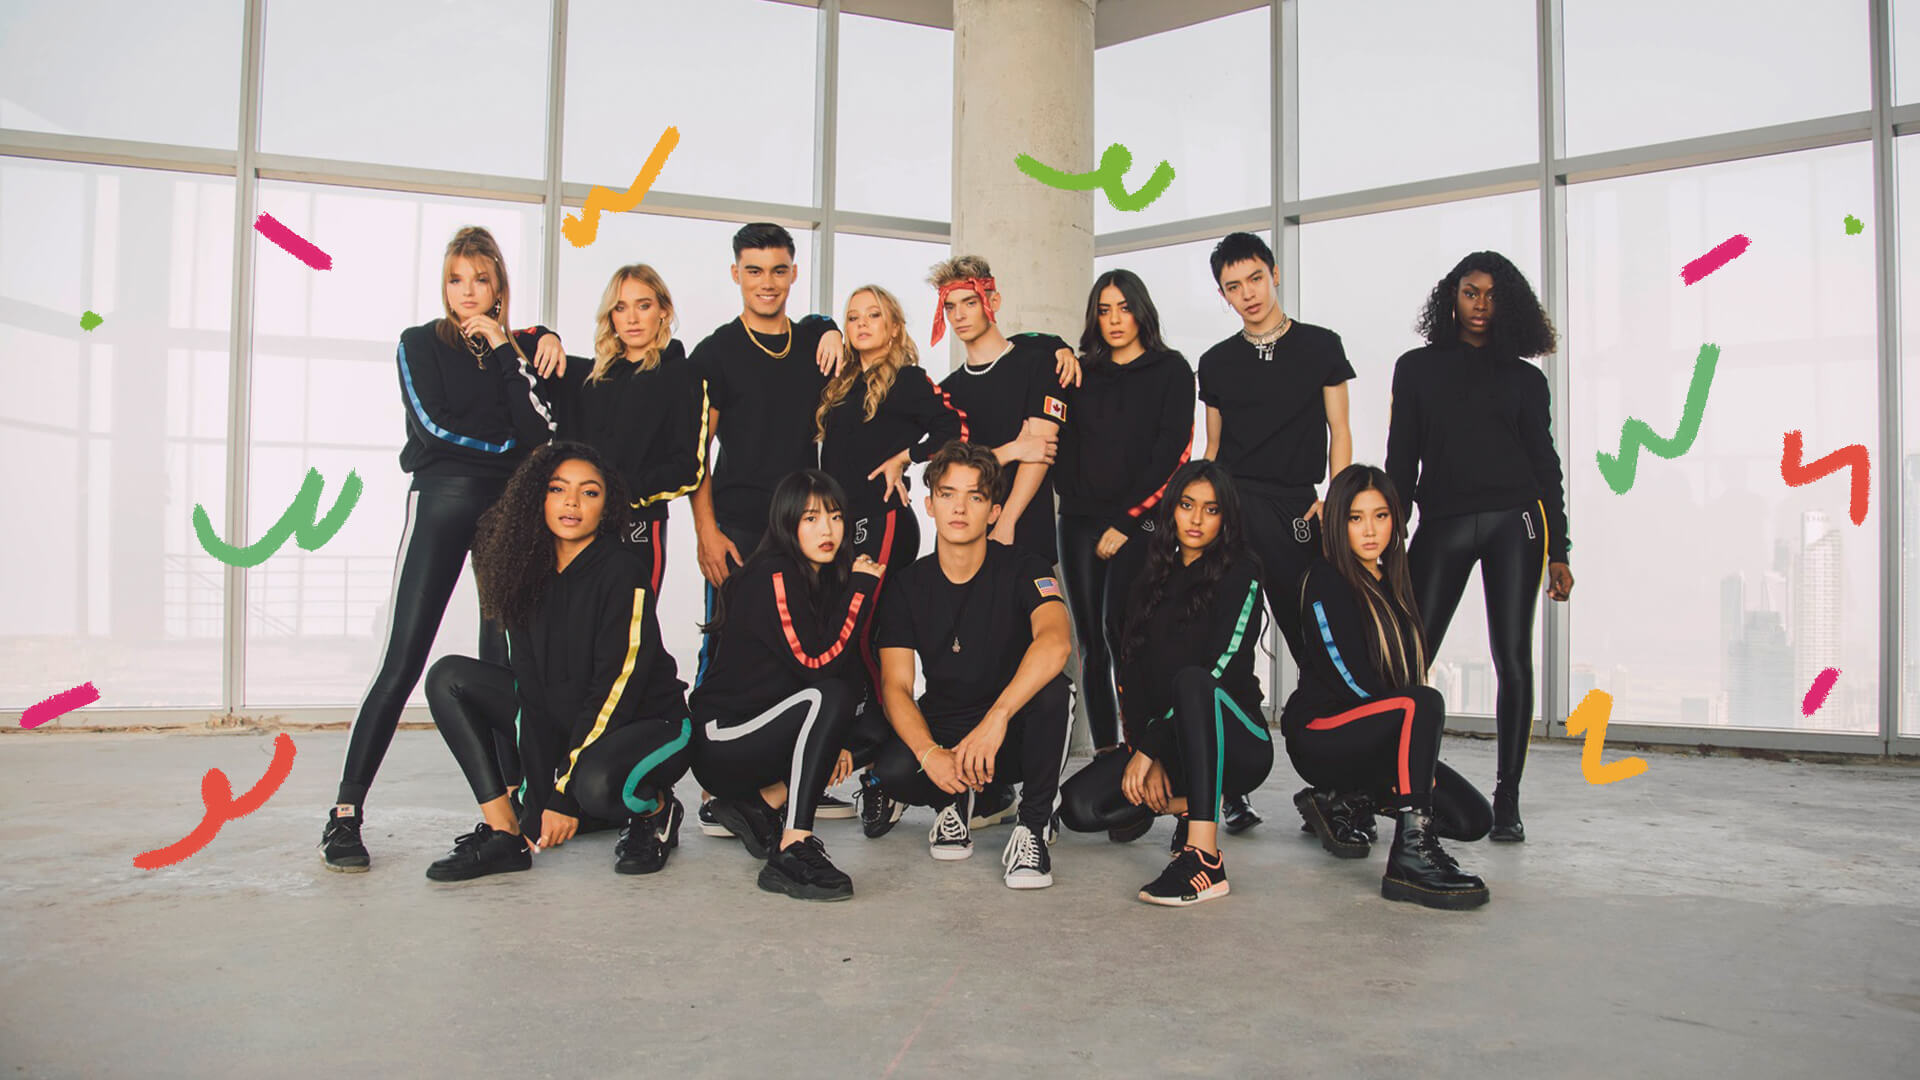 Foto do grupo musical Now United. A imagem mostra um grupo multiétnico de jovens.